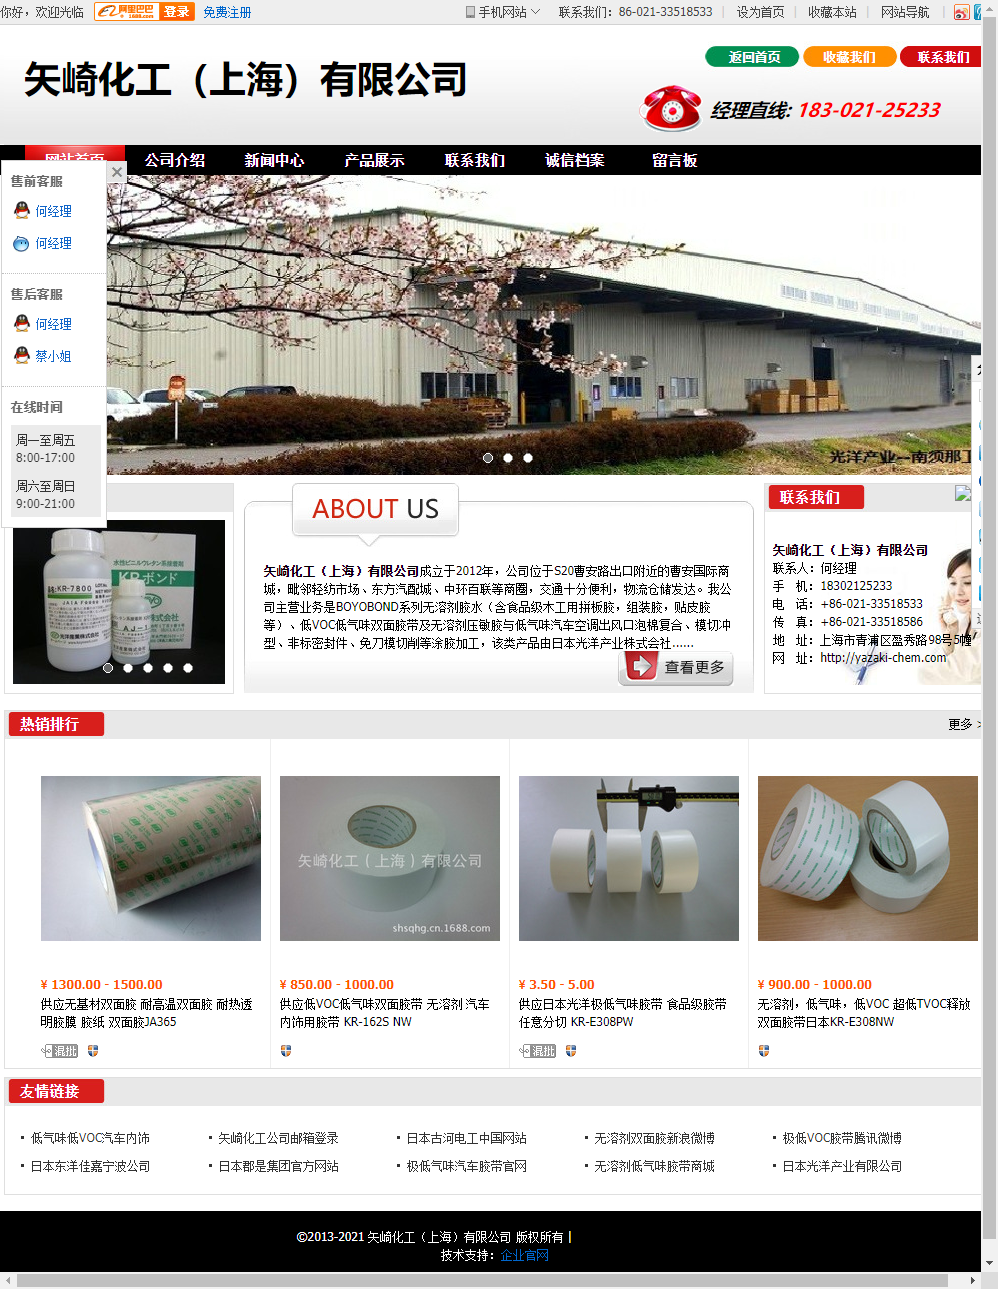 矢崎化工（上海）有限公司网站案例